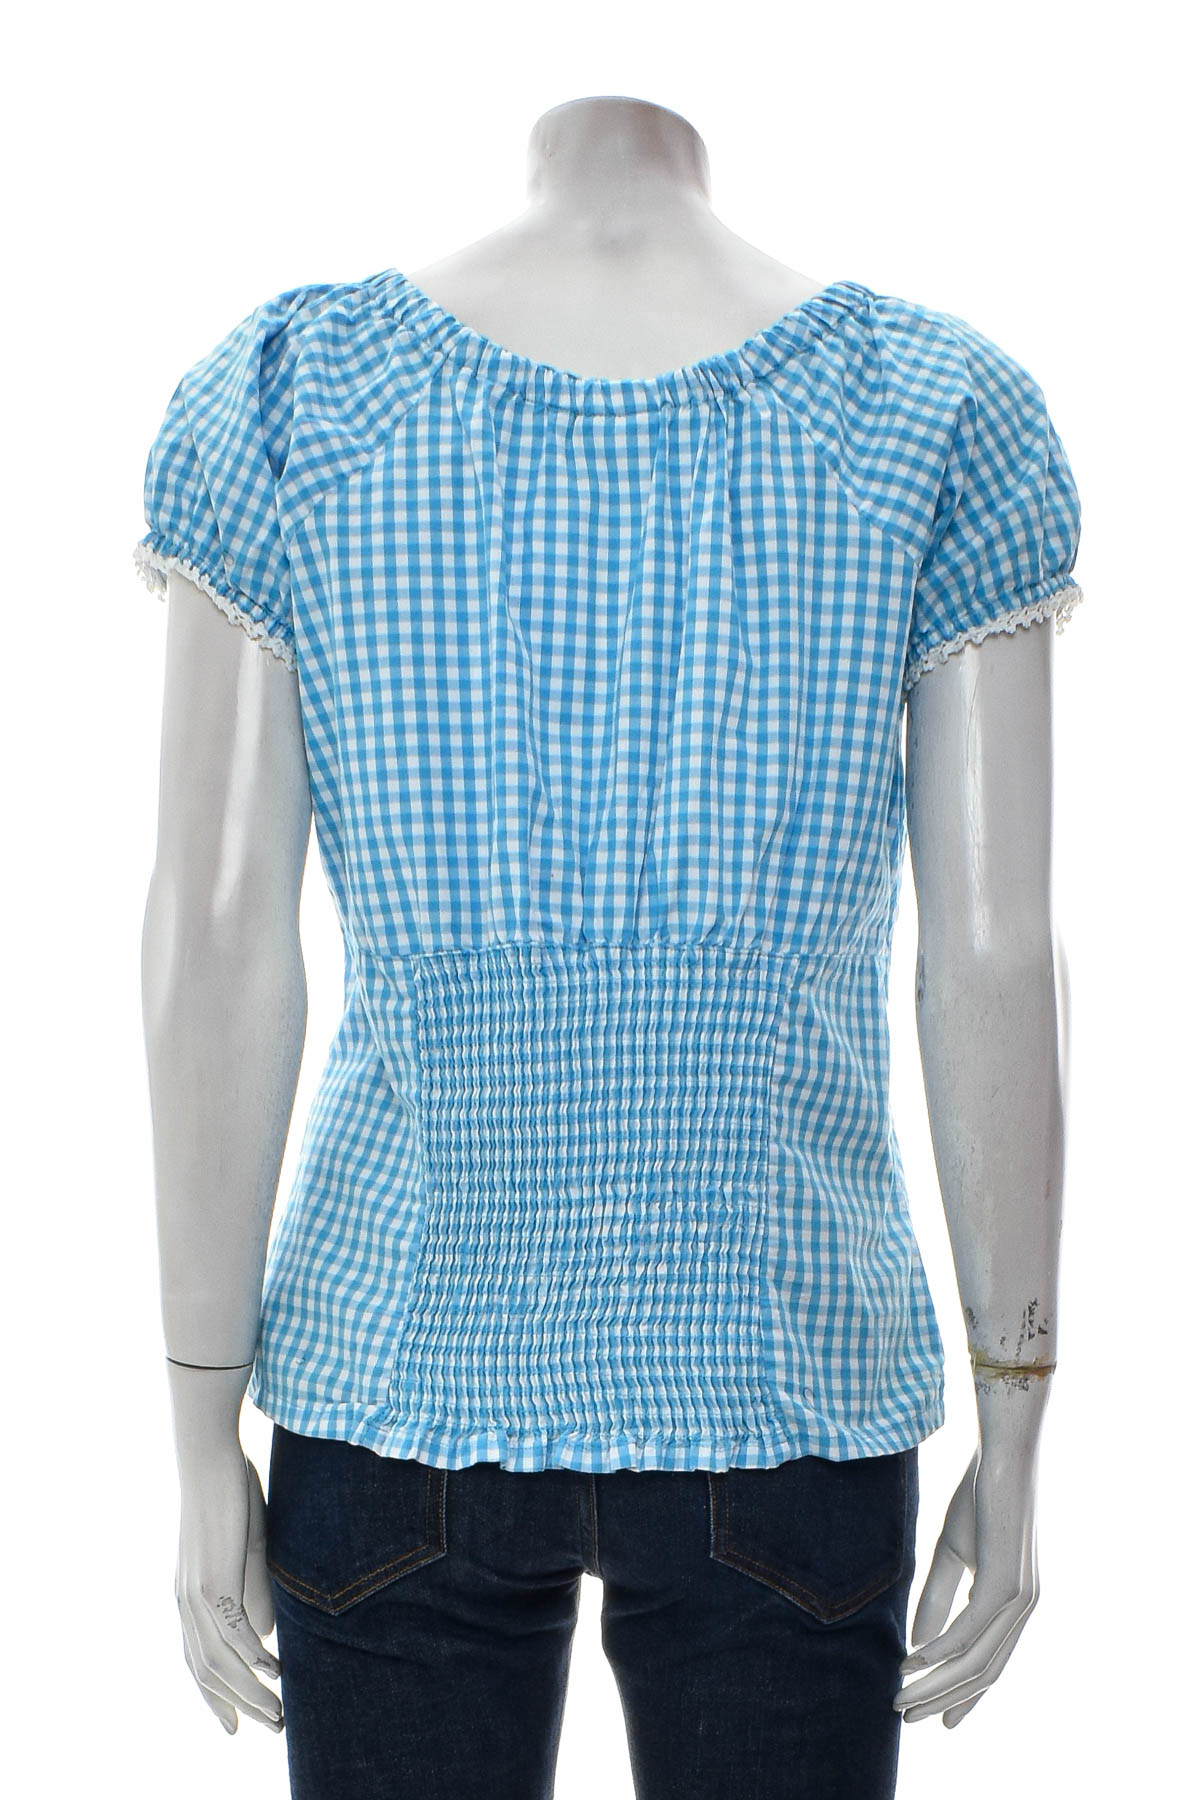 Γυναικείο πουκάμισο - Waldschutz - 1